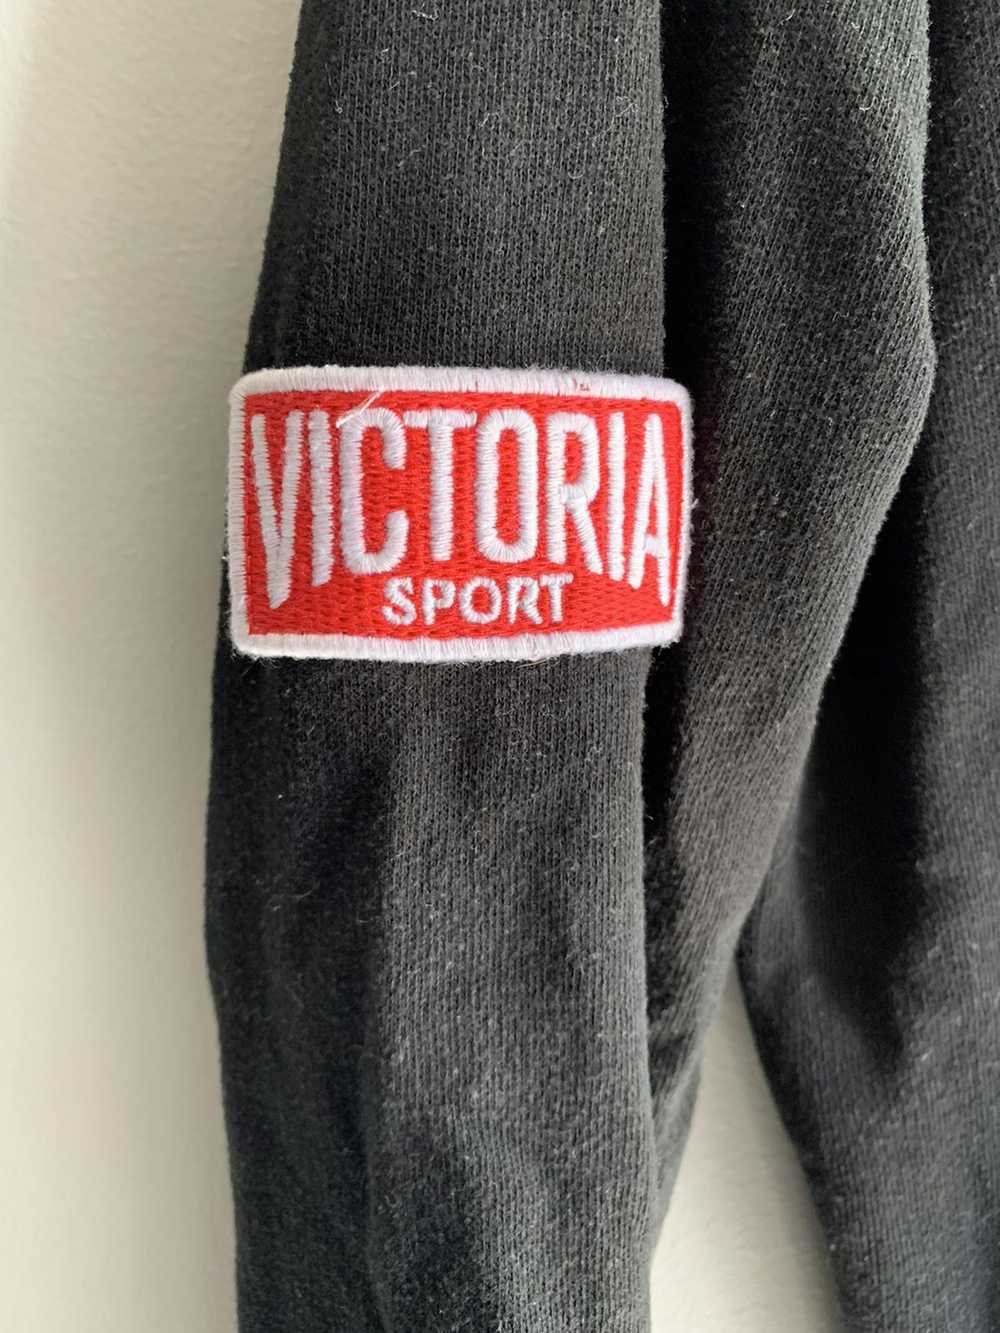 Victory Sportswear Victoria Sportswear Sweatshirt - image 2